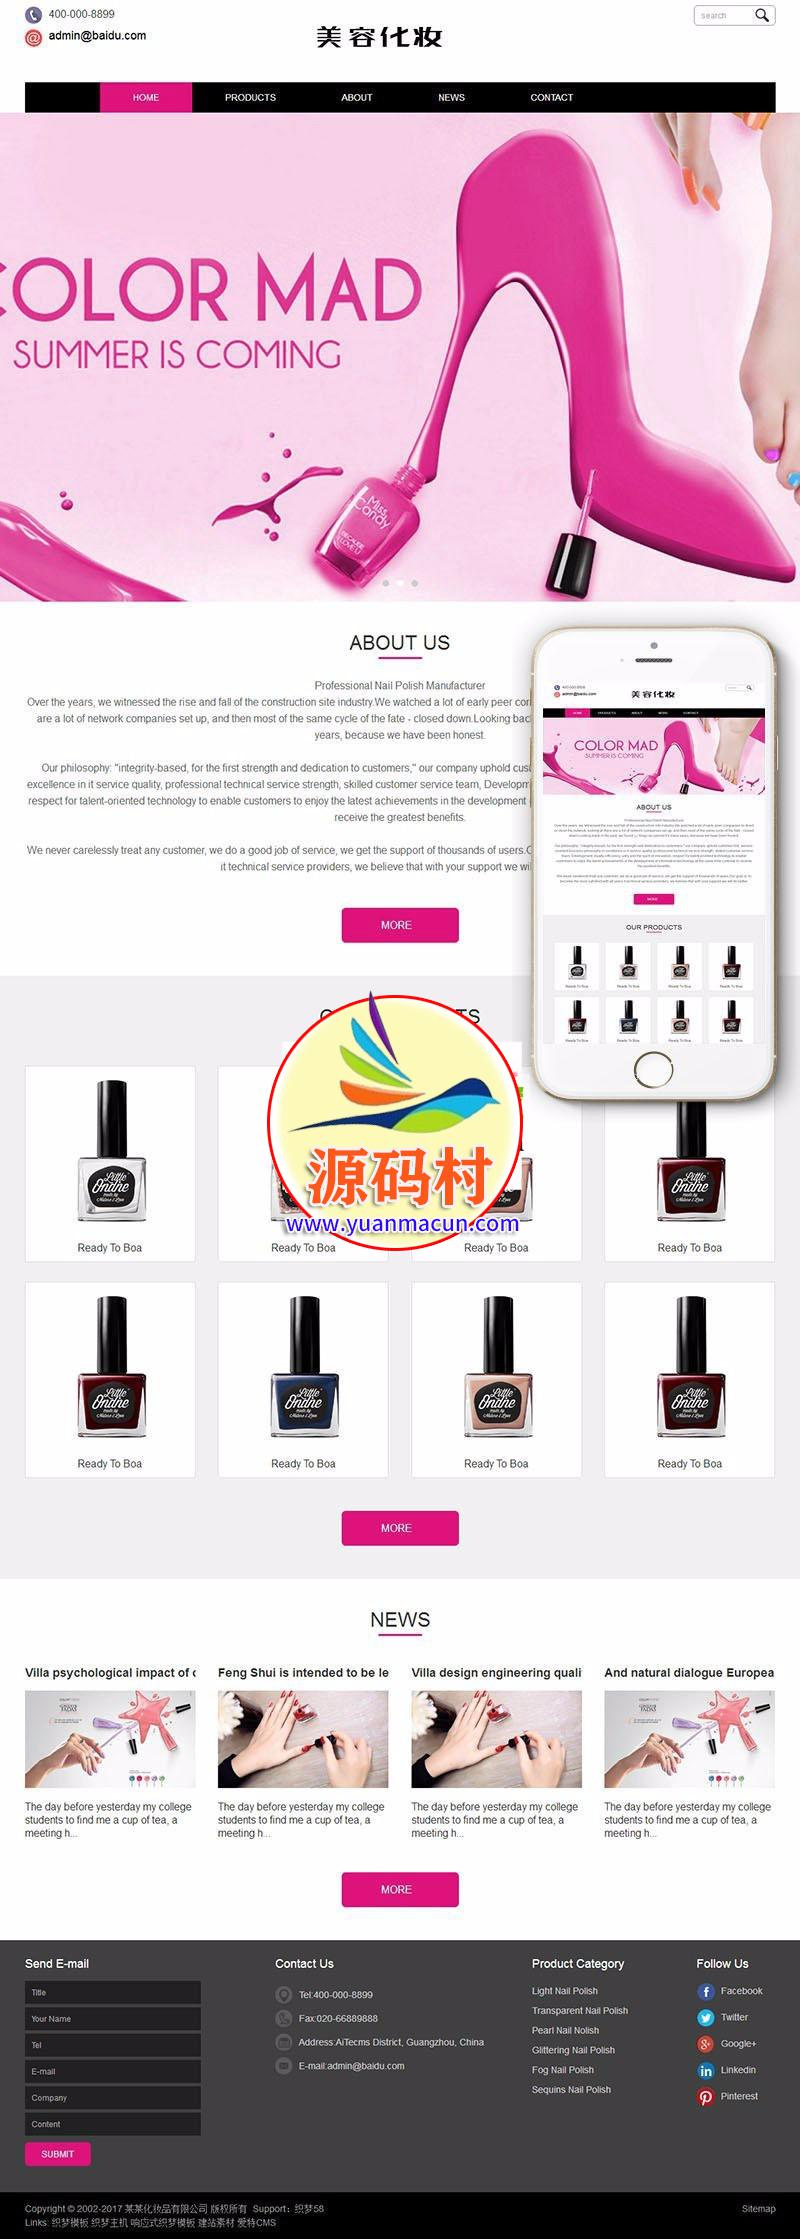 dedecms织梦响应式外贸化妆美容产品网站源码(自适应手机端) 外贸化妆品整站源码下载